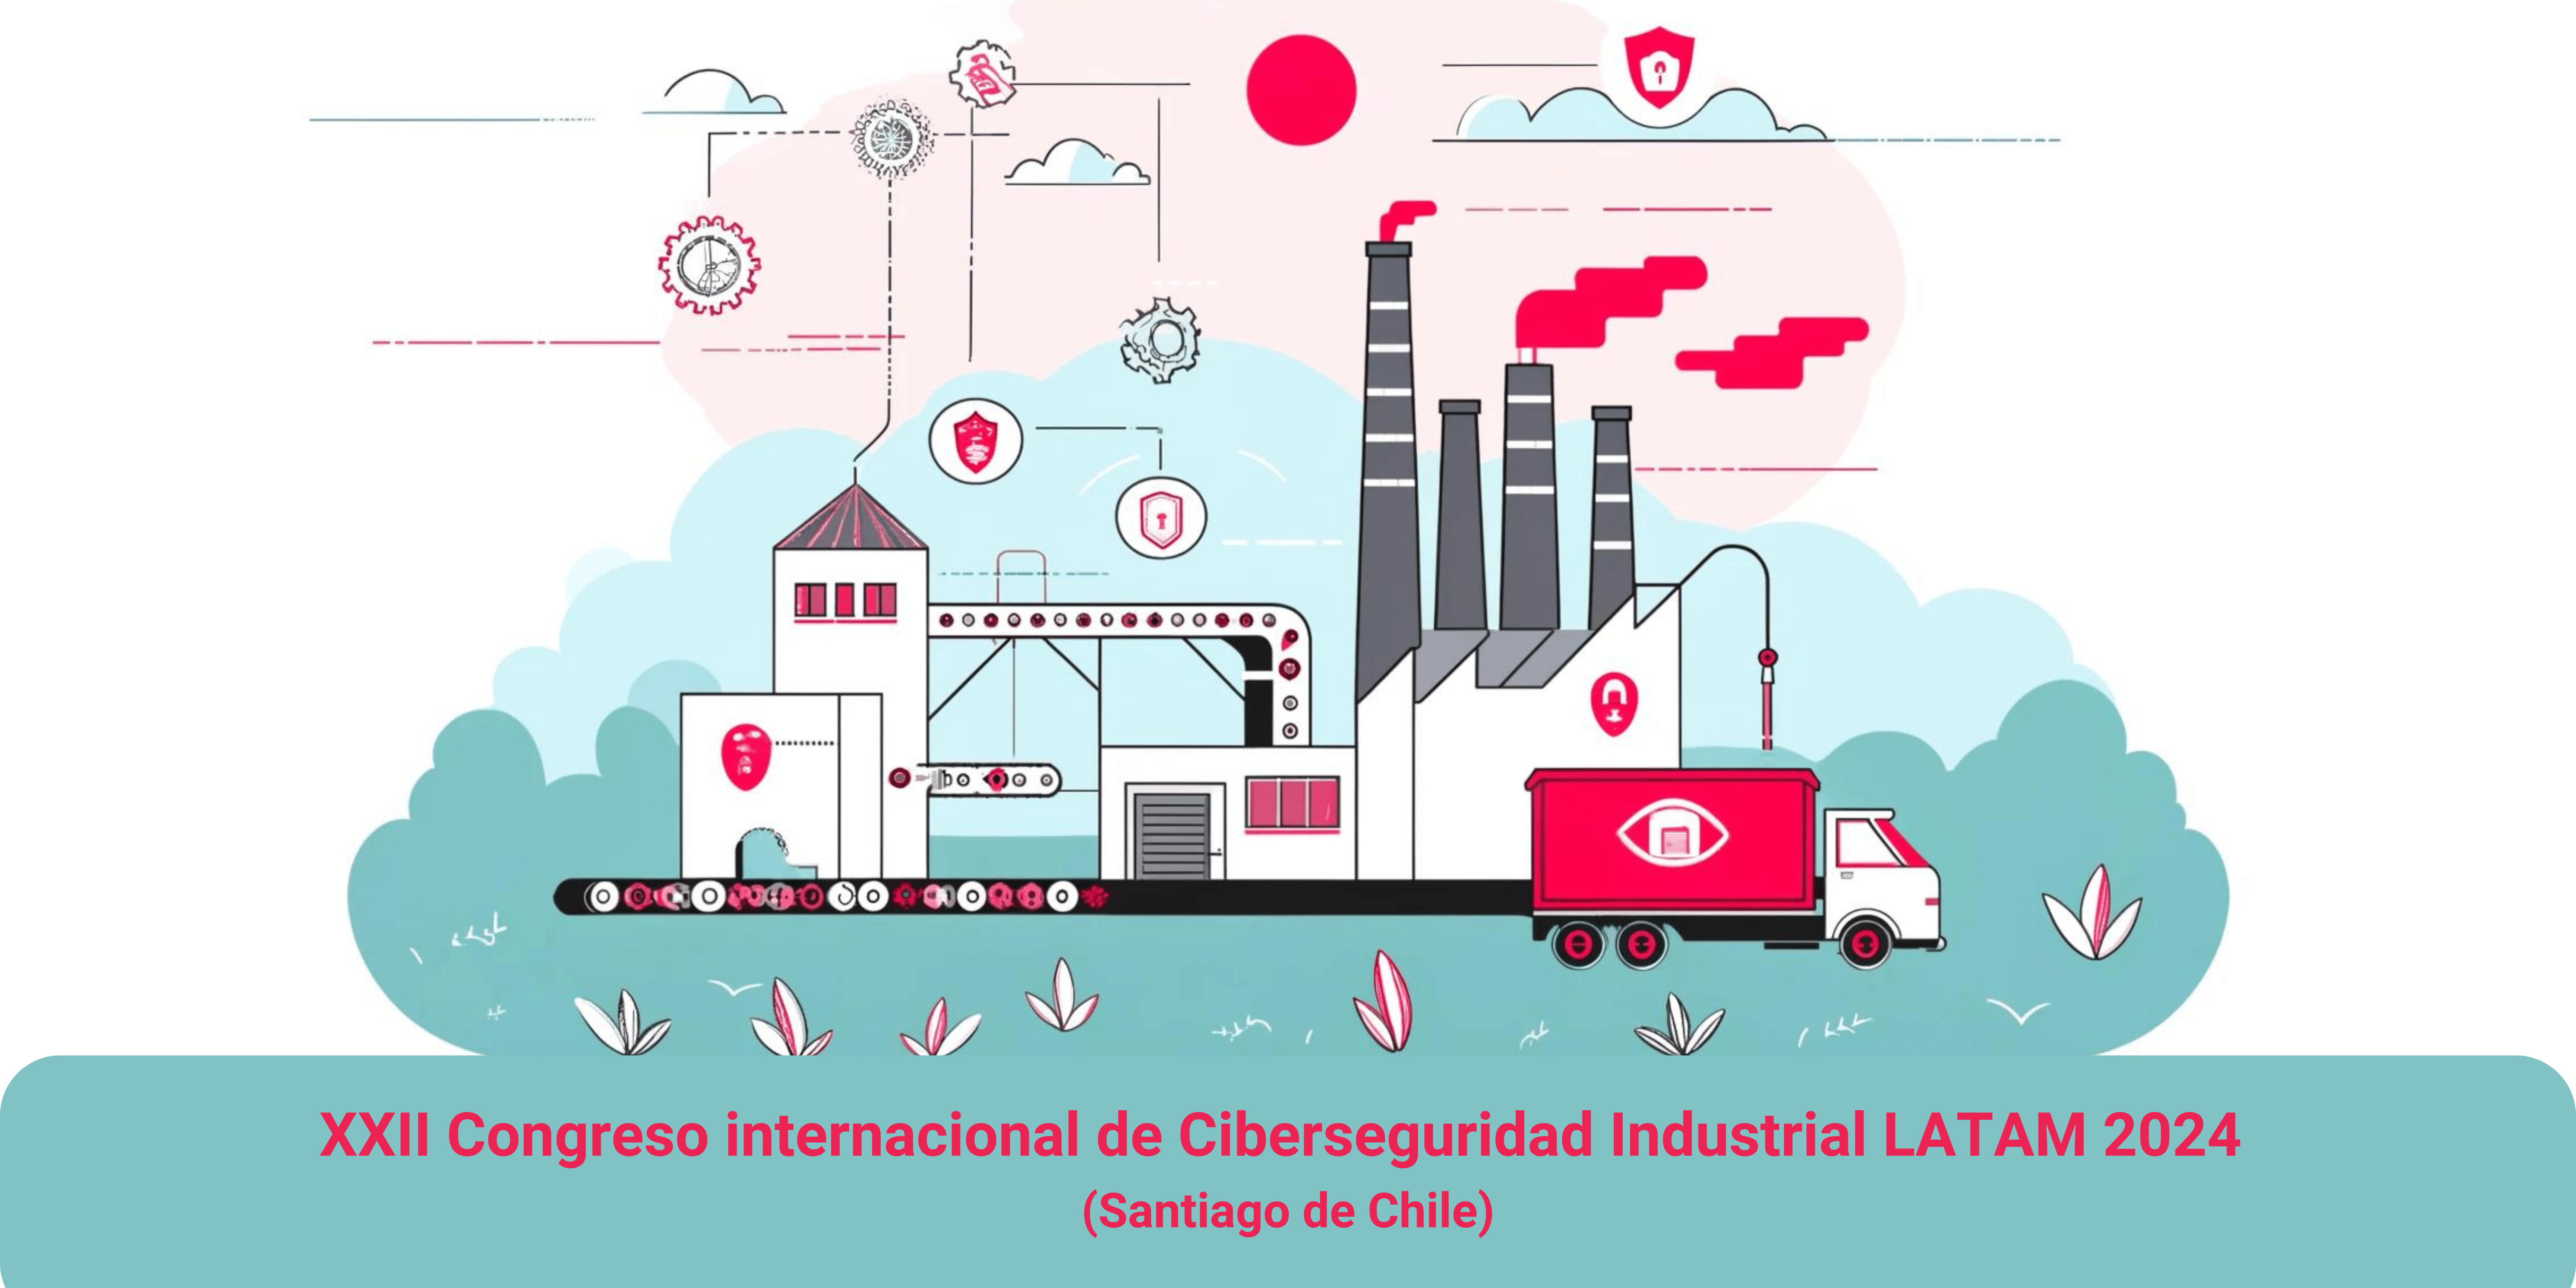 XXII Congreso internacional de Ciberseguridad Industrial LATAM (Santiago de Chile)